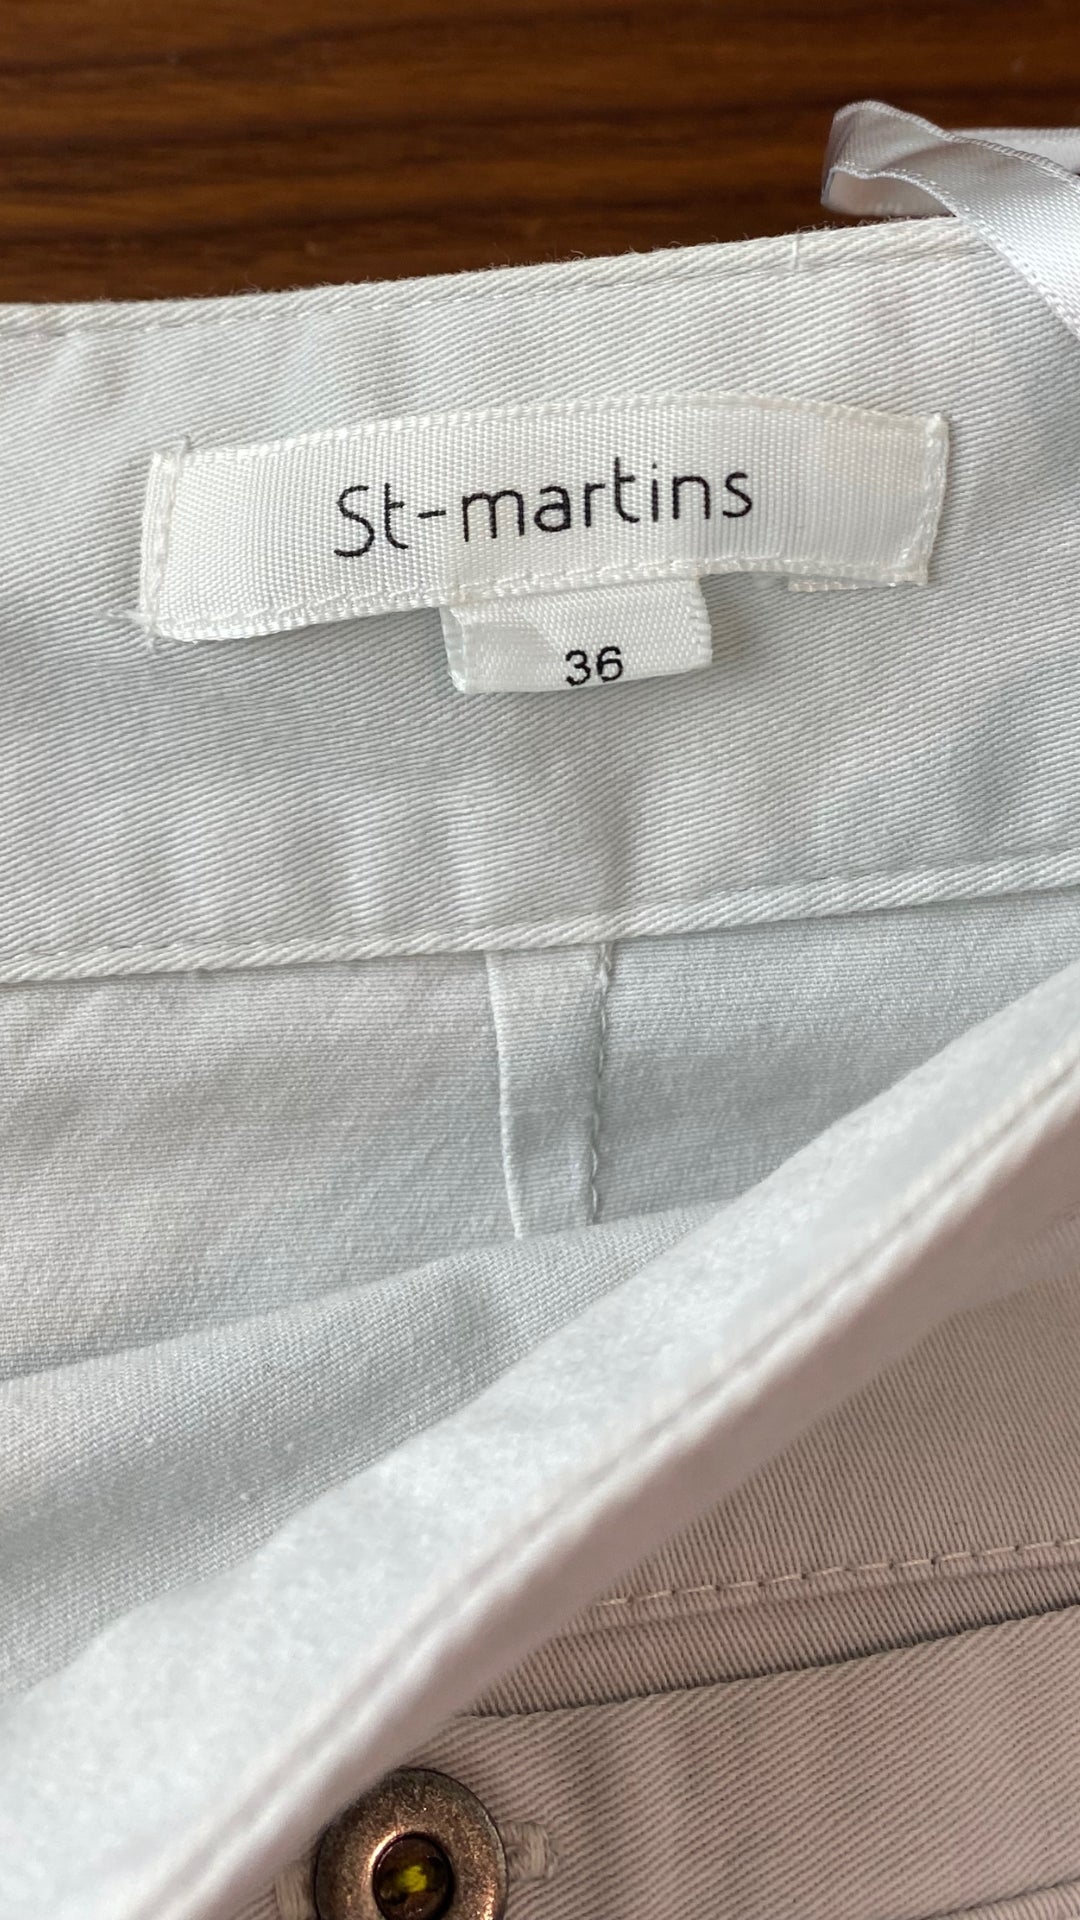 Jupe triangles St-Martins, taille 36 (small). Vue de l'étiquette de marque te taille.